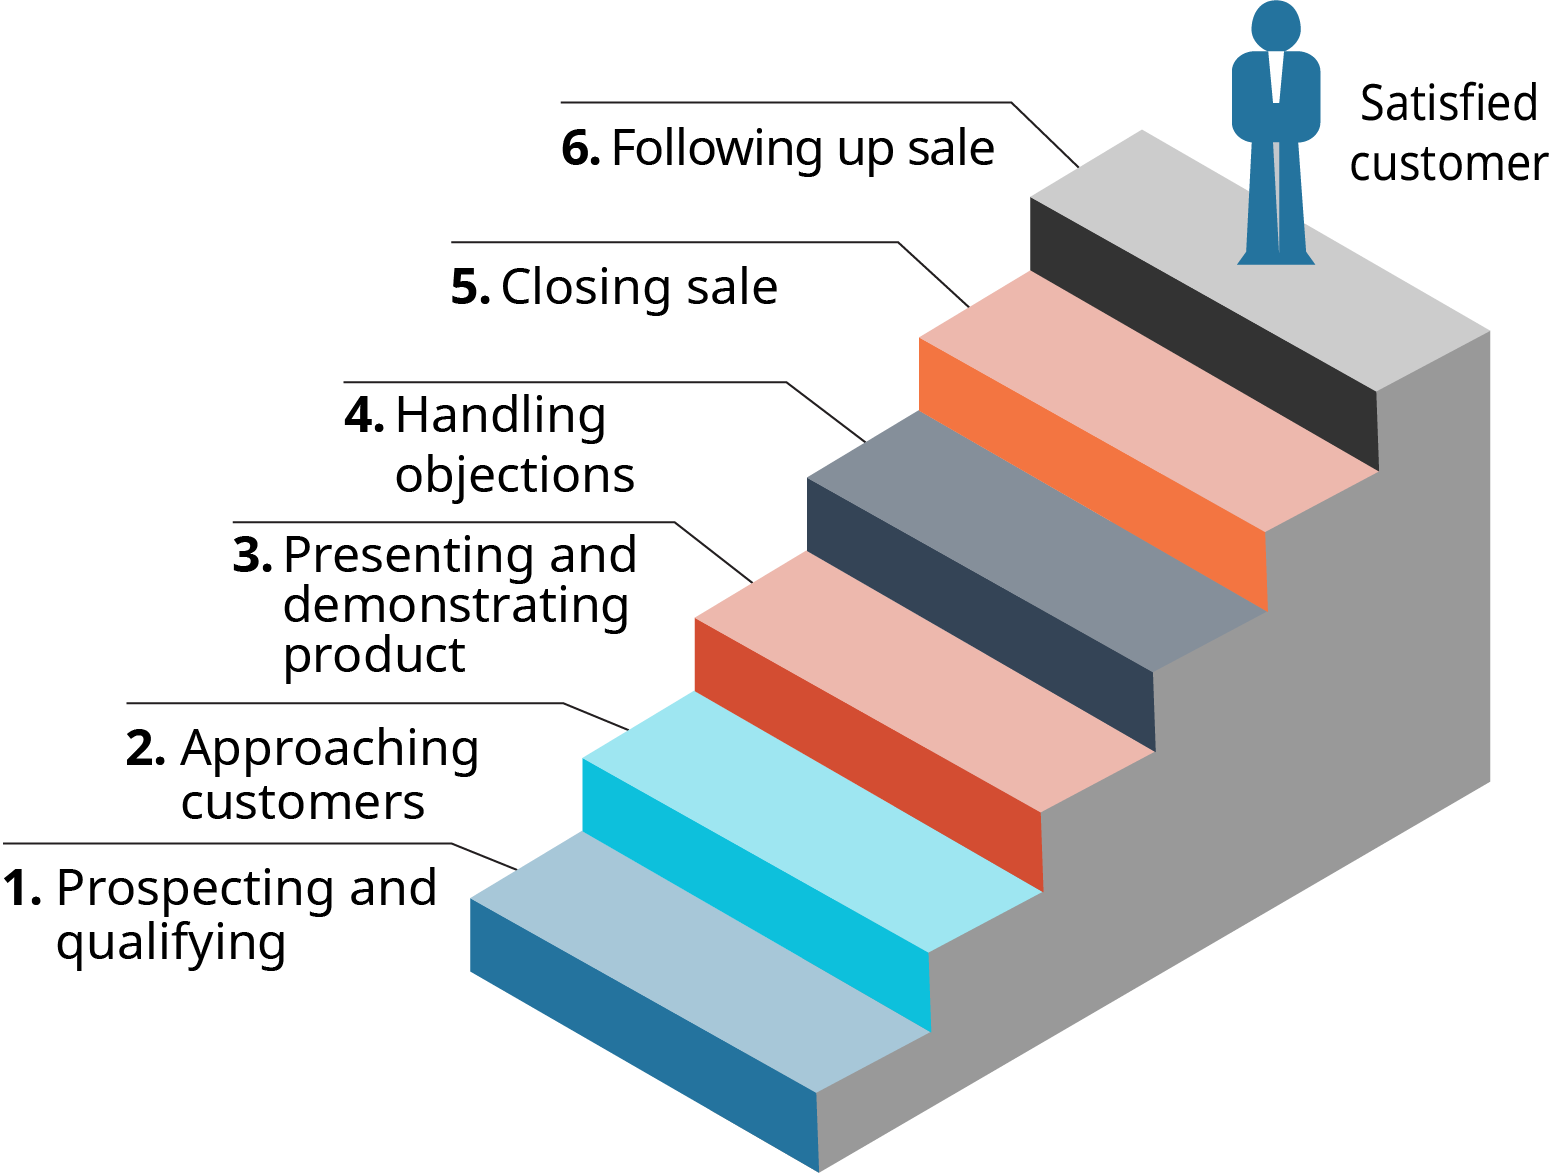 Un schéma montre les 6 étapes du processus de vente sous la forme d'un escalier.